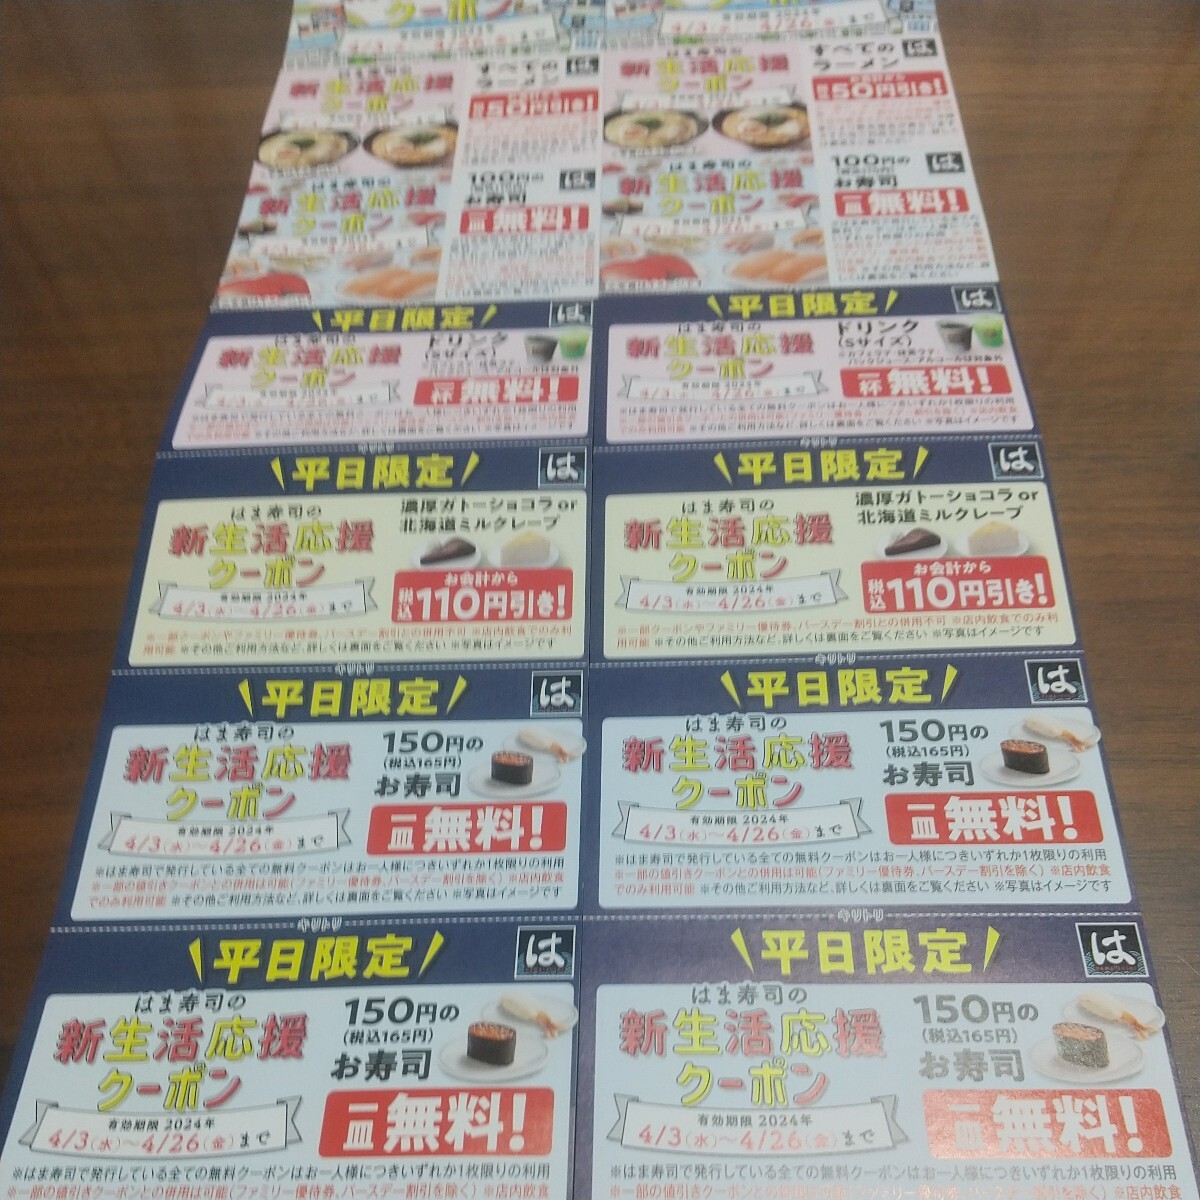 はま寿司の新生活応援クーポンが２枚。 有効期限は4月26日まで。平日限定券とかあるので、利用方法をよく読んでください。の画像1